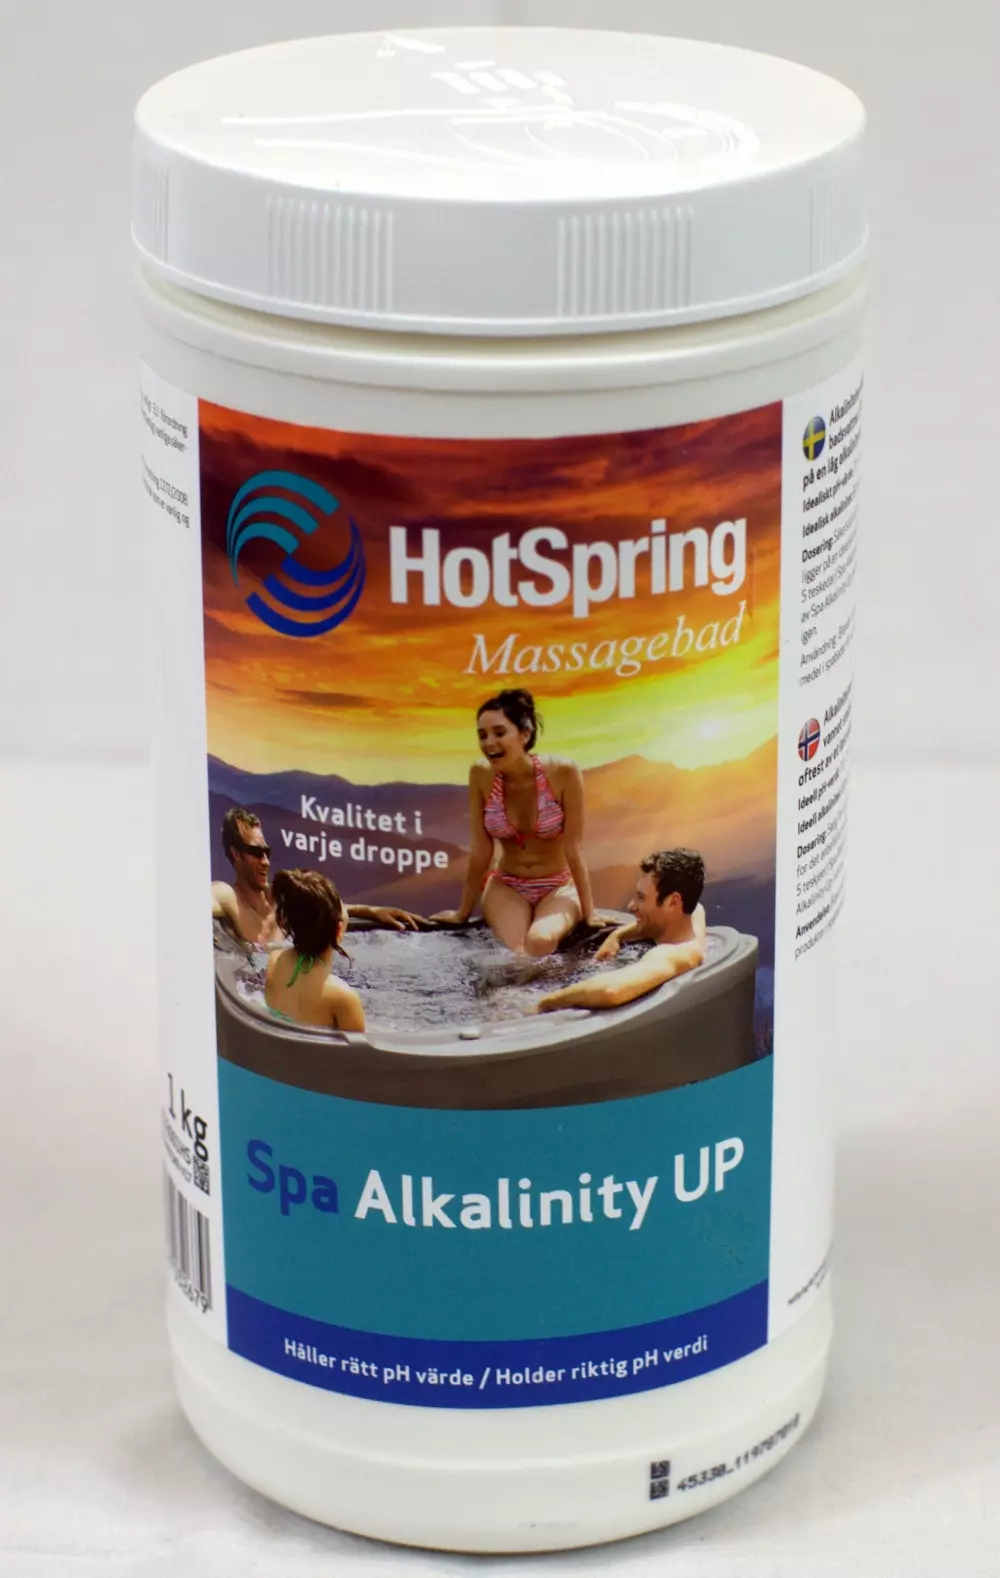 Spa alkalinity up 1kg, 4029156032679, 100026, Hotspring Spa Alkalinity UP, 1,0 kg burk, 4533001HS, Alkaliniteten hjelper deg å holde pH-verdien i spabadvannet stabilt.